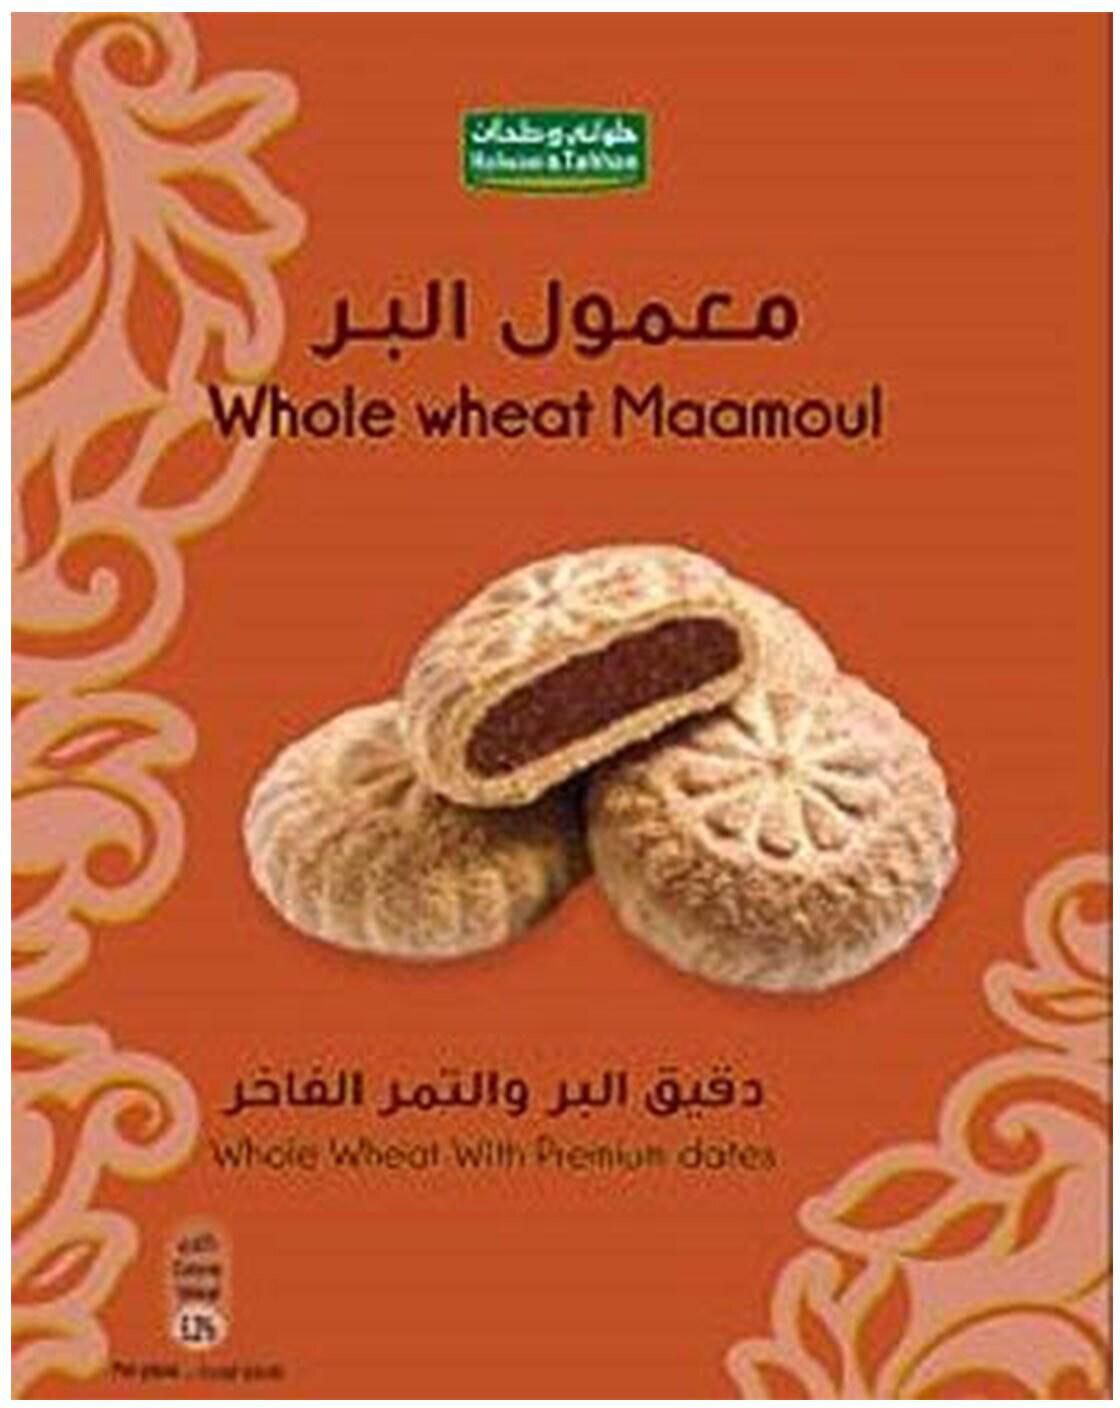 حلواني و طحان معمول البر والتمر الفاخر 300 جرام